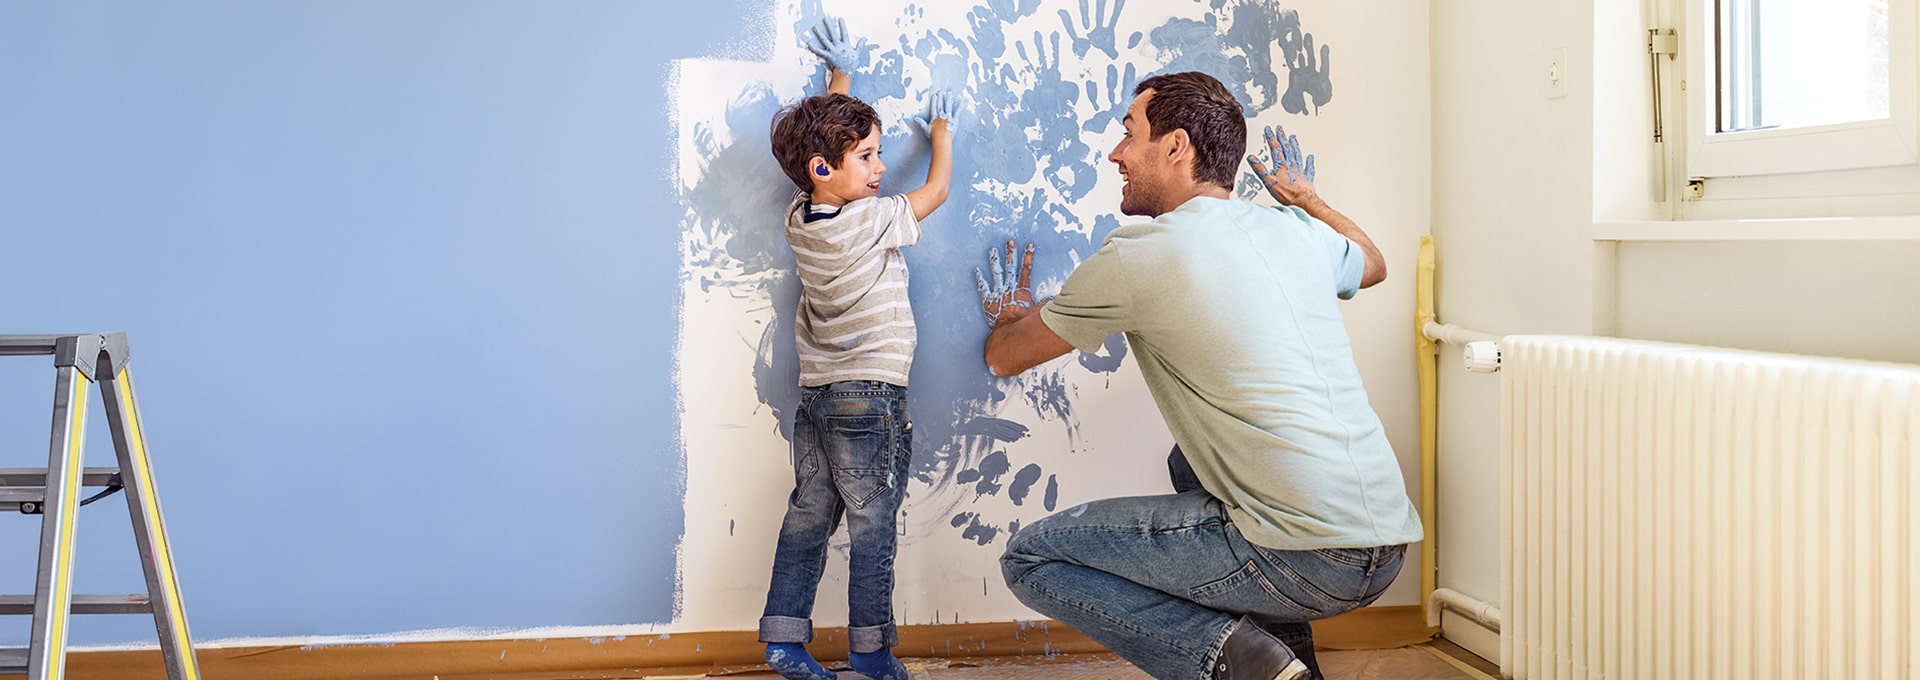 Ojciec oraz jego syn z aparatami Leox Super Power|Ultra Power świetnie się bawią przy malowaniu ściany.